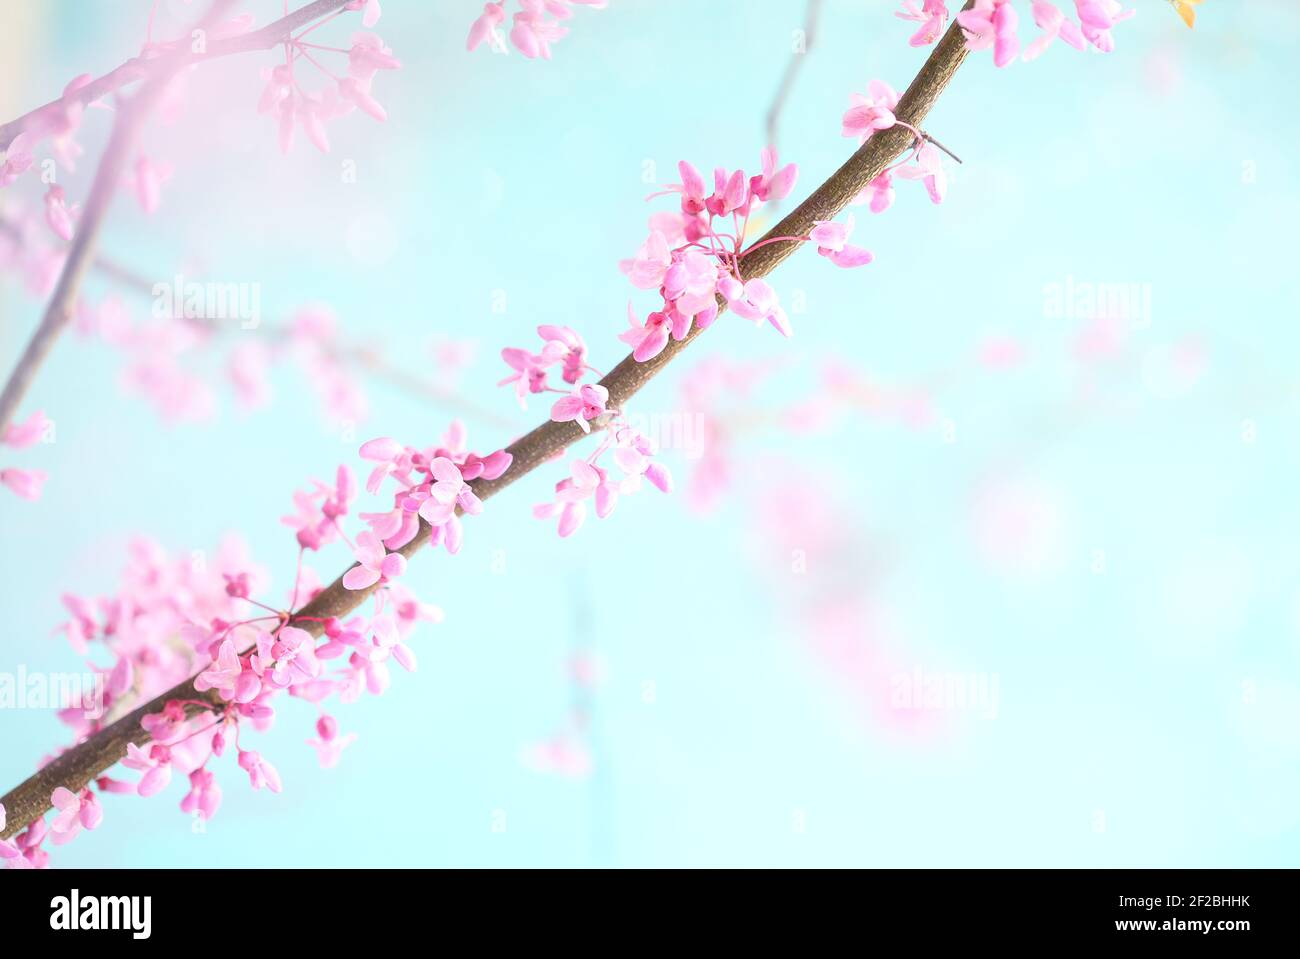 Abstrakter Frühlingshintergrund mit wunderschönen östlichen Redbud Tree Blüten vor weichem, friedlichem, blauem Himmel. Selektiver Fokus mit extrem unscharfem Hintergrund. Stockfoto